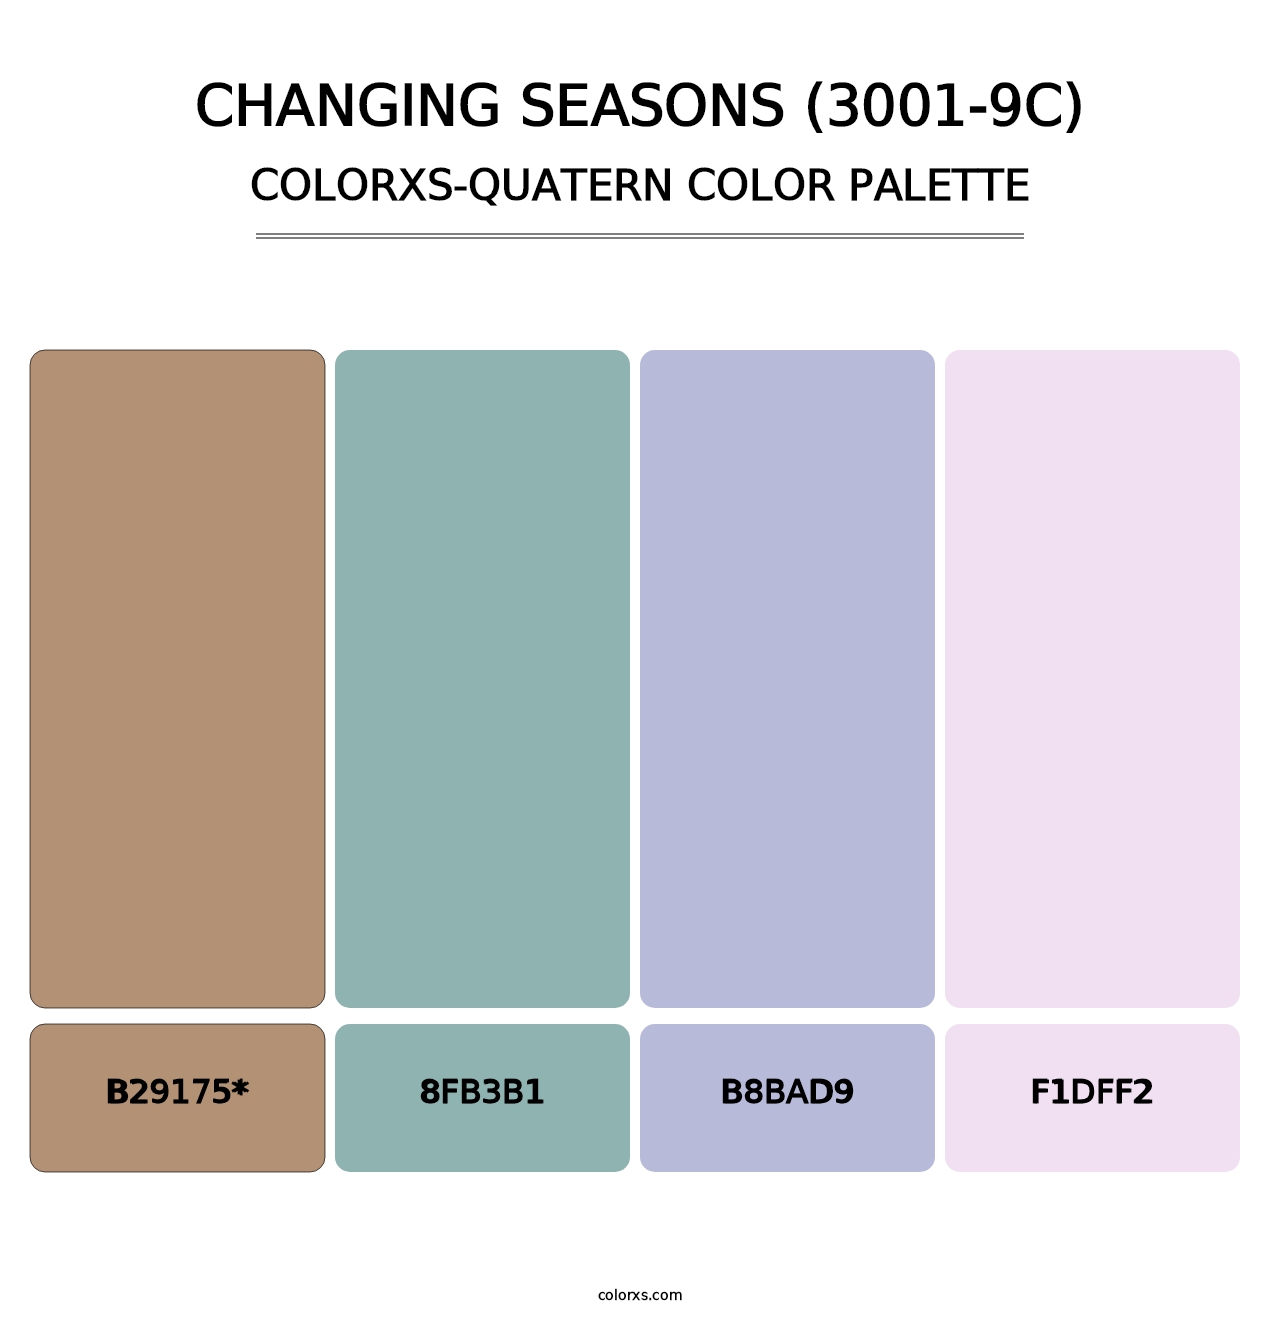 Changing Seasons (3001-9C) - Colorxs Quad Palette